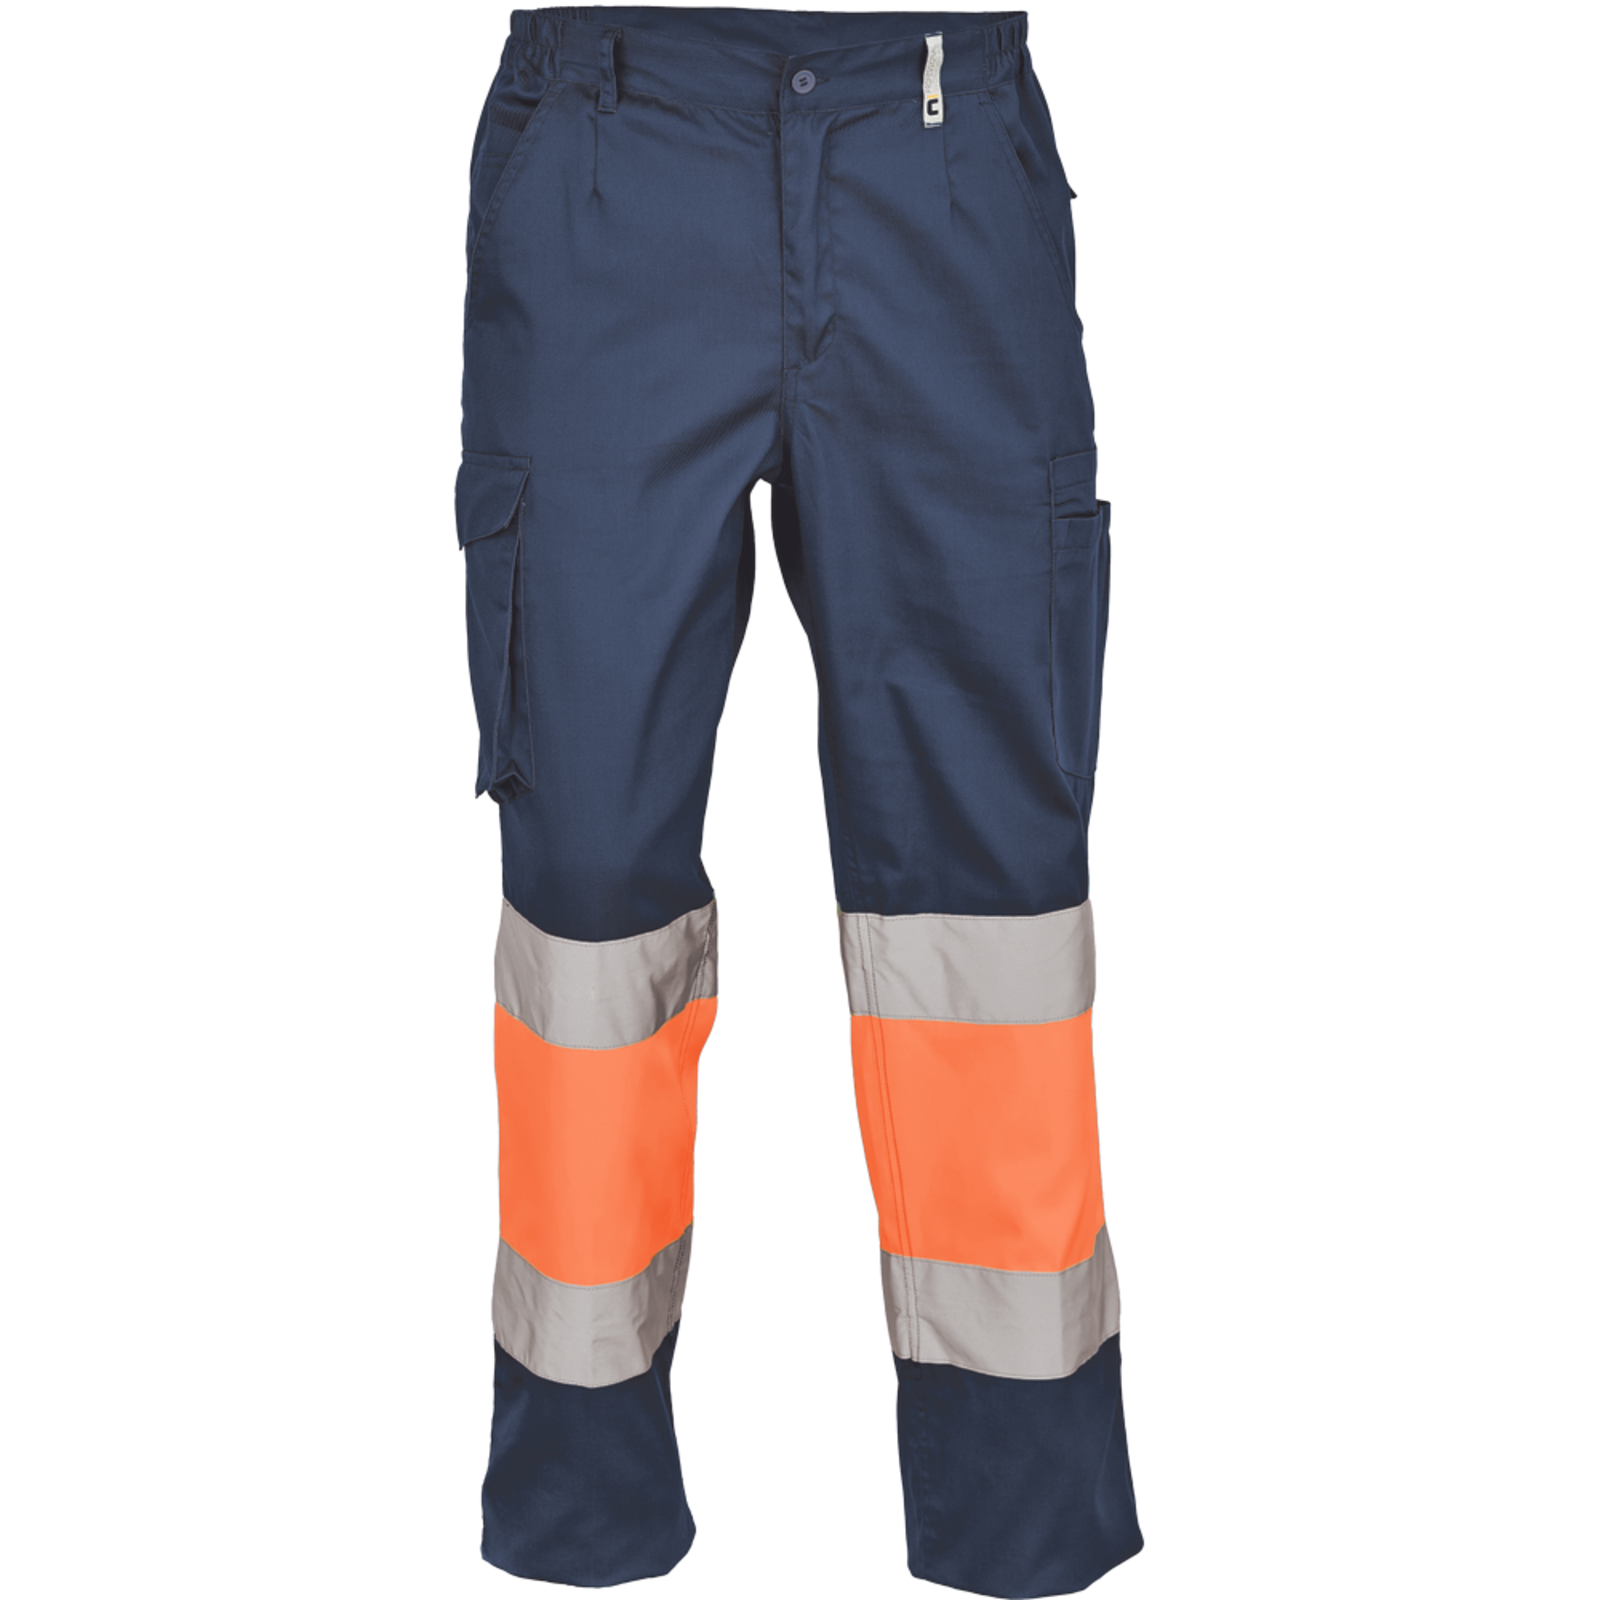 Pracovné reflexné nohavice Cerva Ciudades Bilbao HV - veľkosť: 48, farba: nám. modrá/oranžová